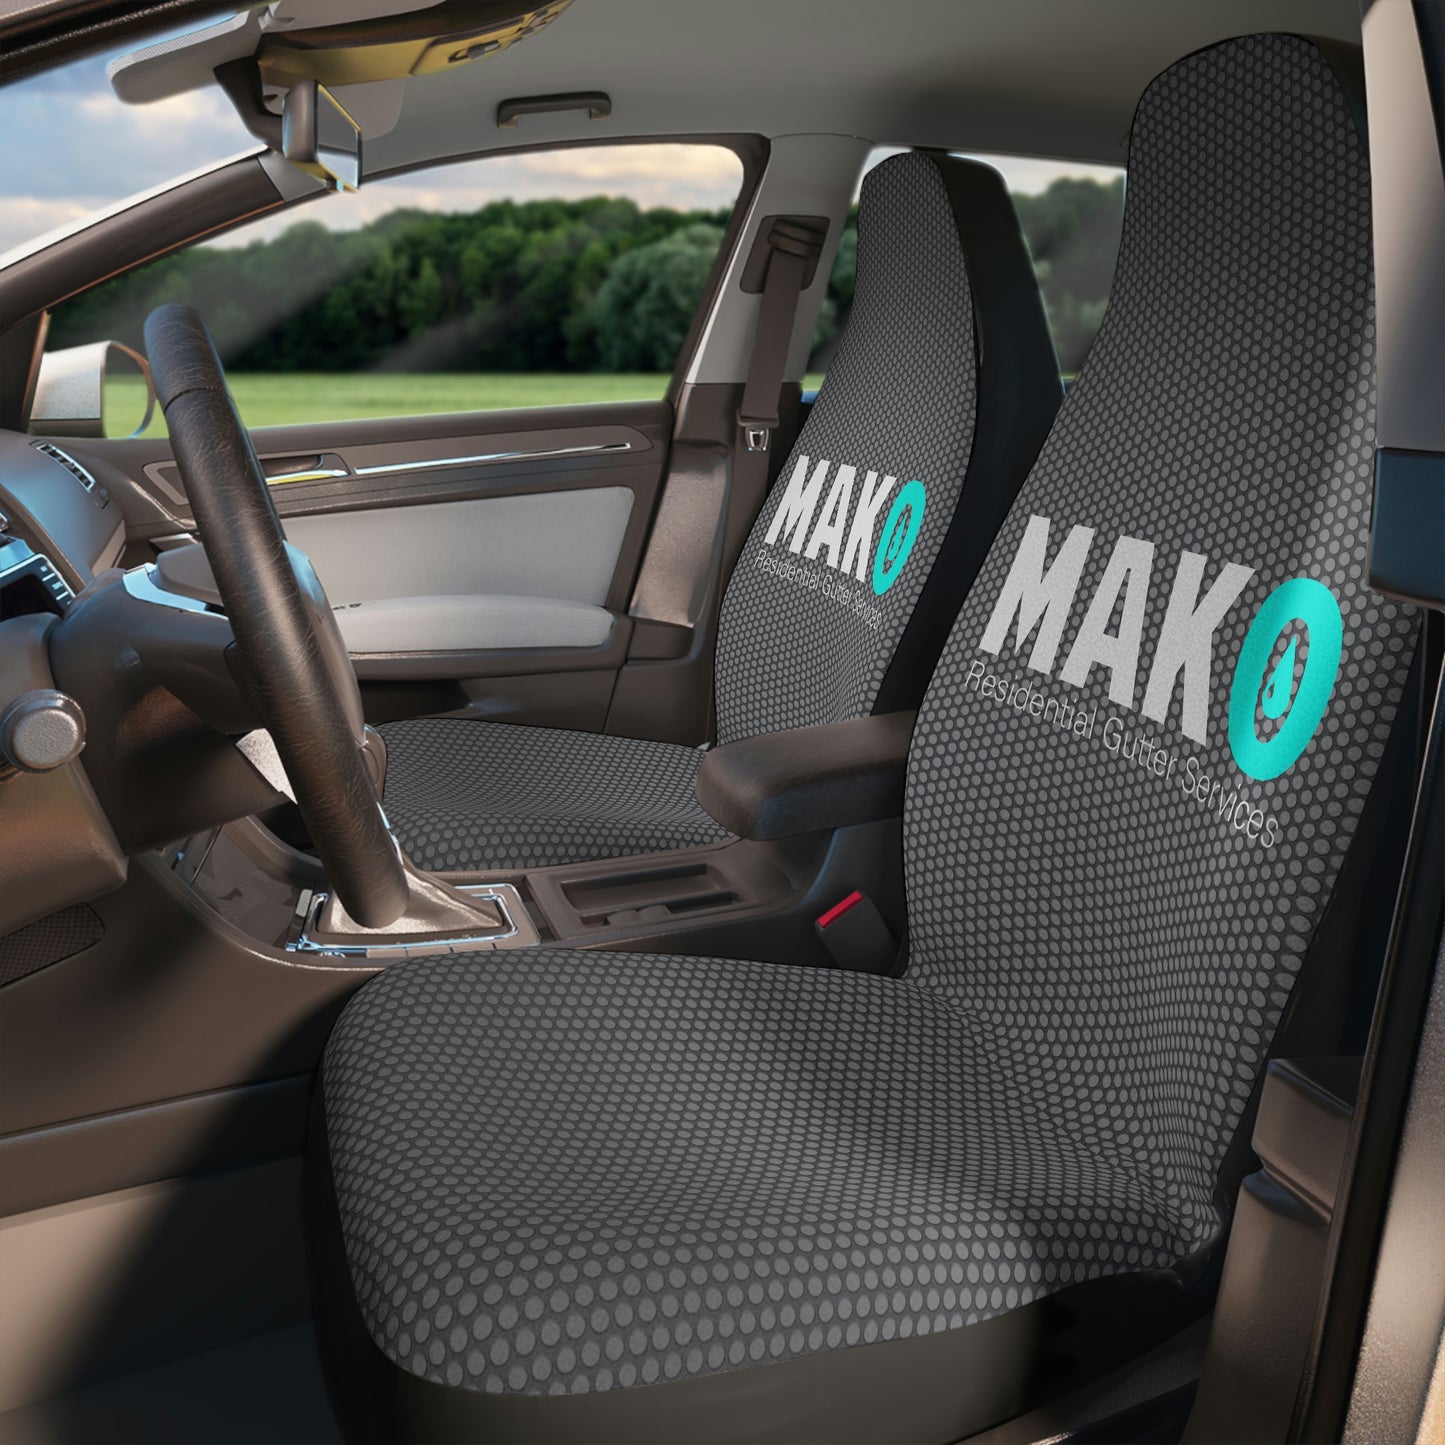 MAKO Grey Car Seat Covers